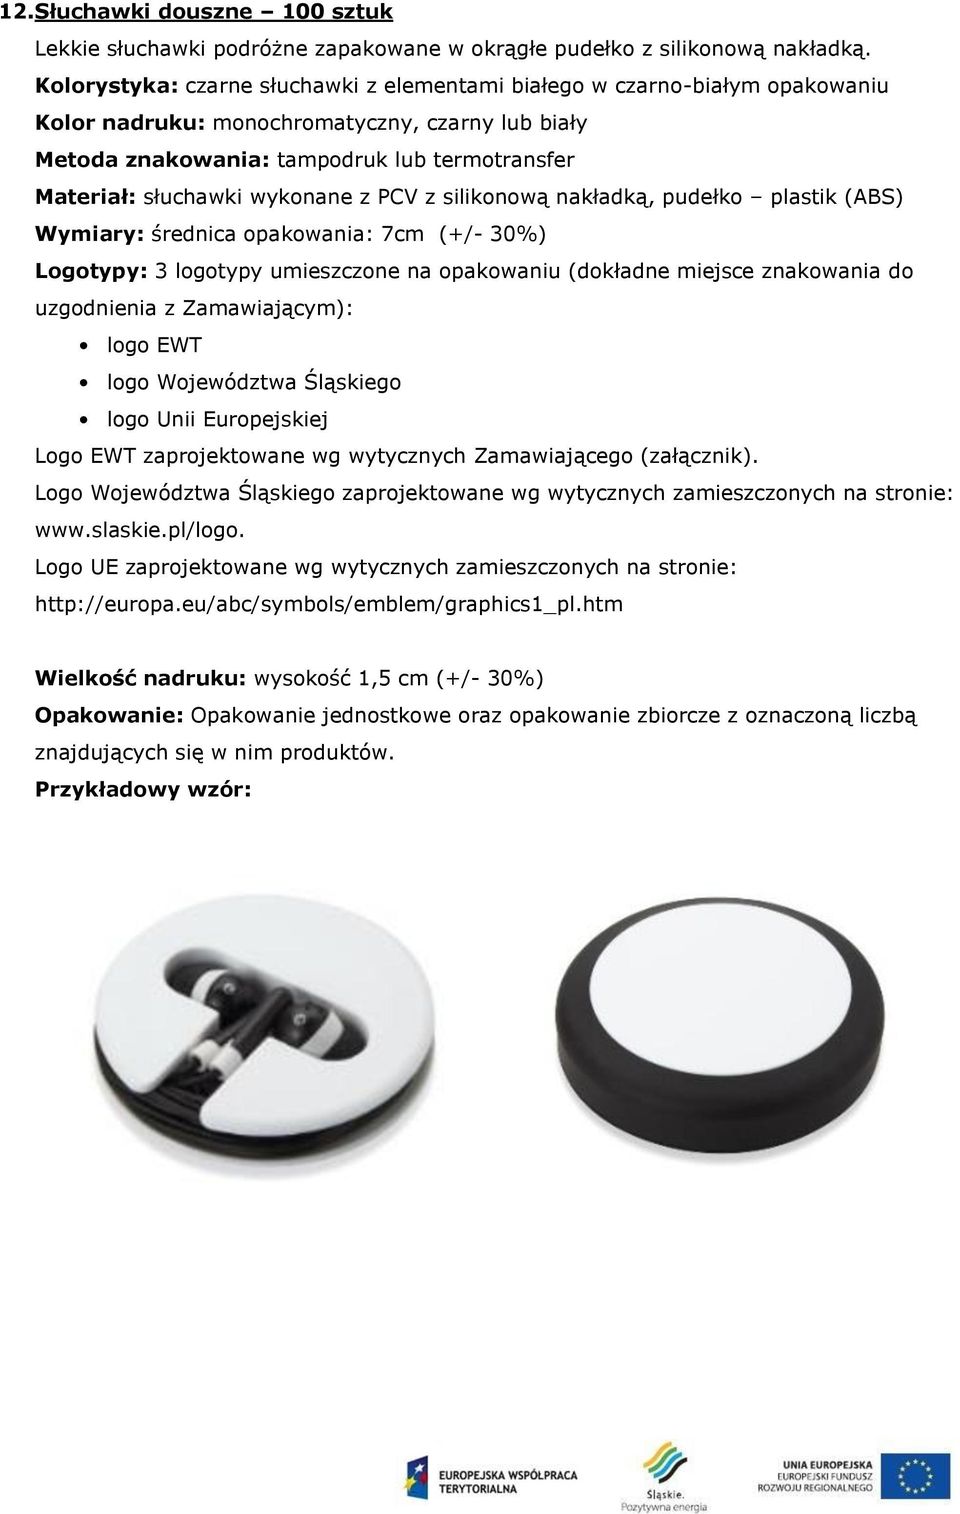 Materiał: słuchawki wykonane z PCV z silikonową nakładką, pudełko plastik (ABS) Wymiary: średnica opakowania: 7cm (+/- 30%) Logotypy: 3 logotypy umieszczone na opakowaniu (dokładne